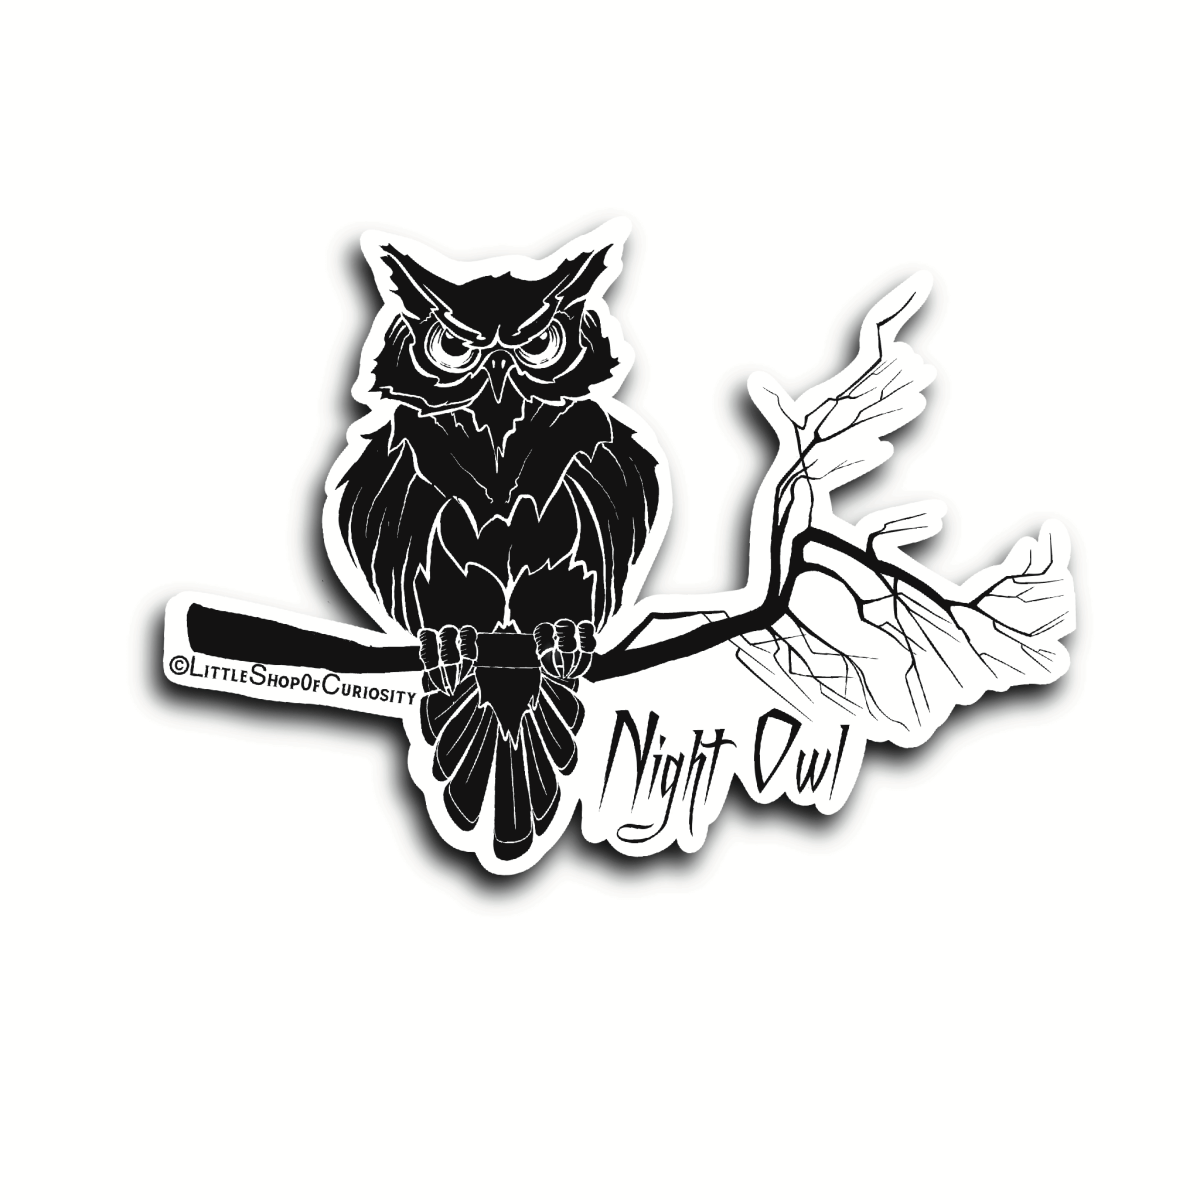 Night Owl Sticker - Black & White Sticker - Little Shop of Curiosity